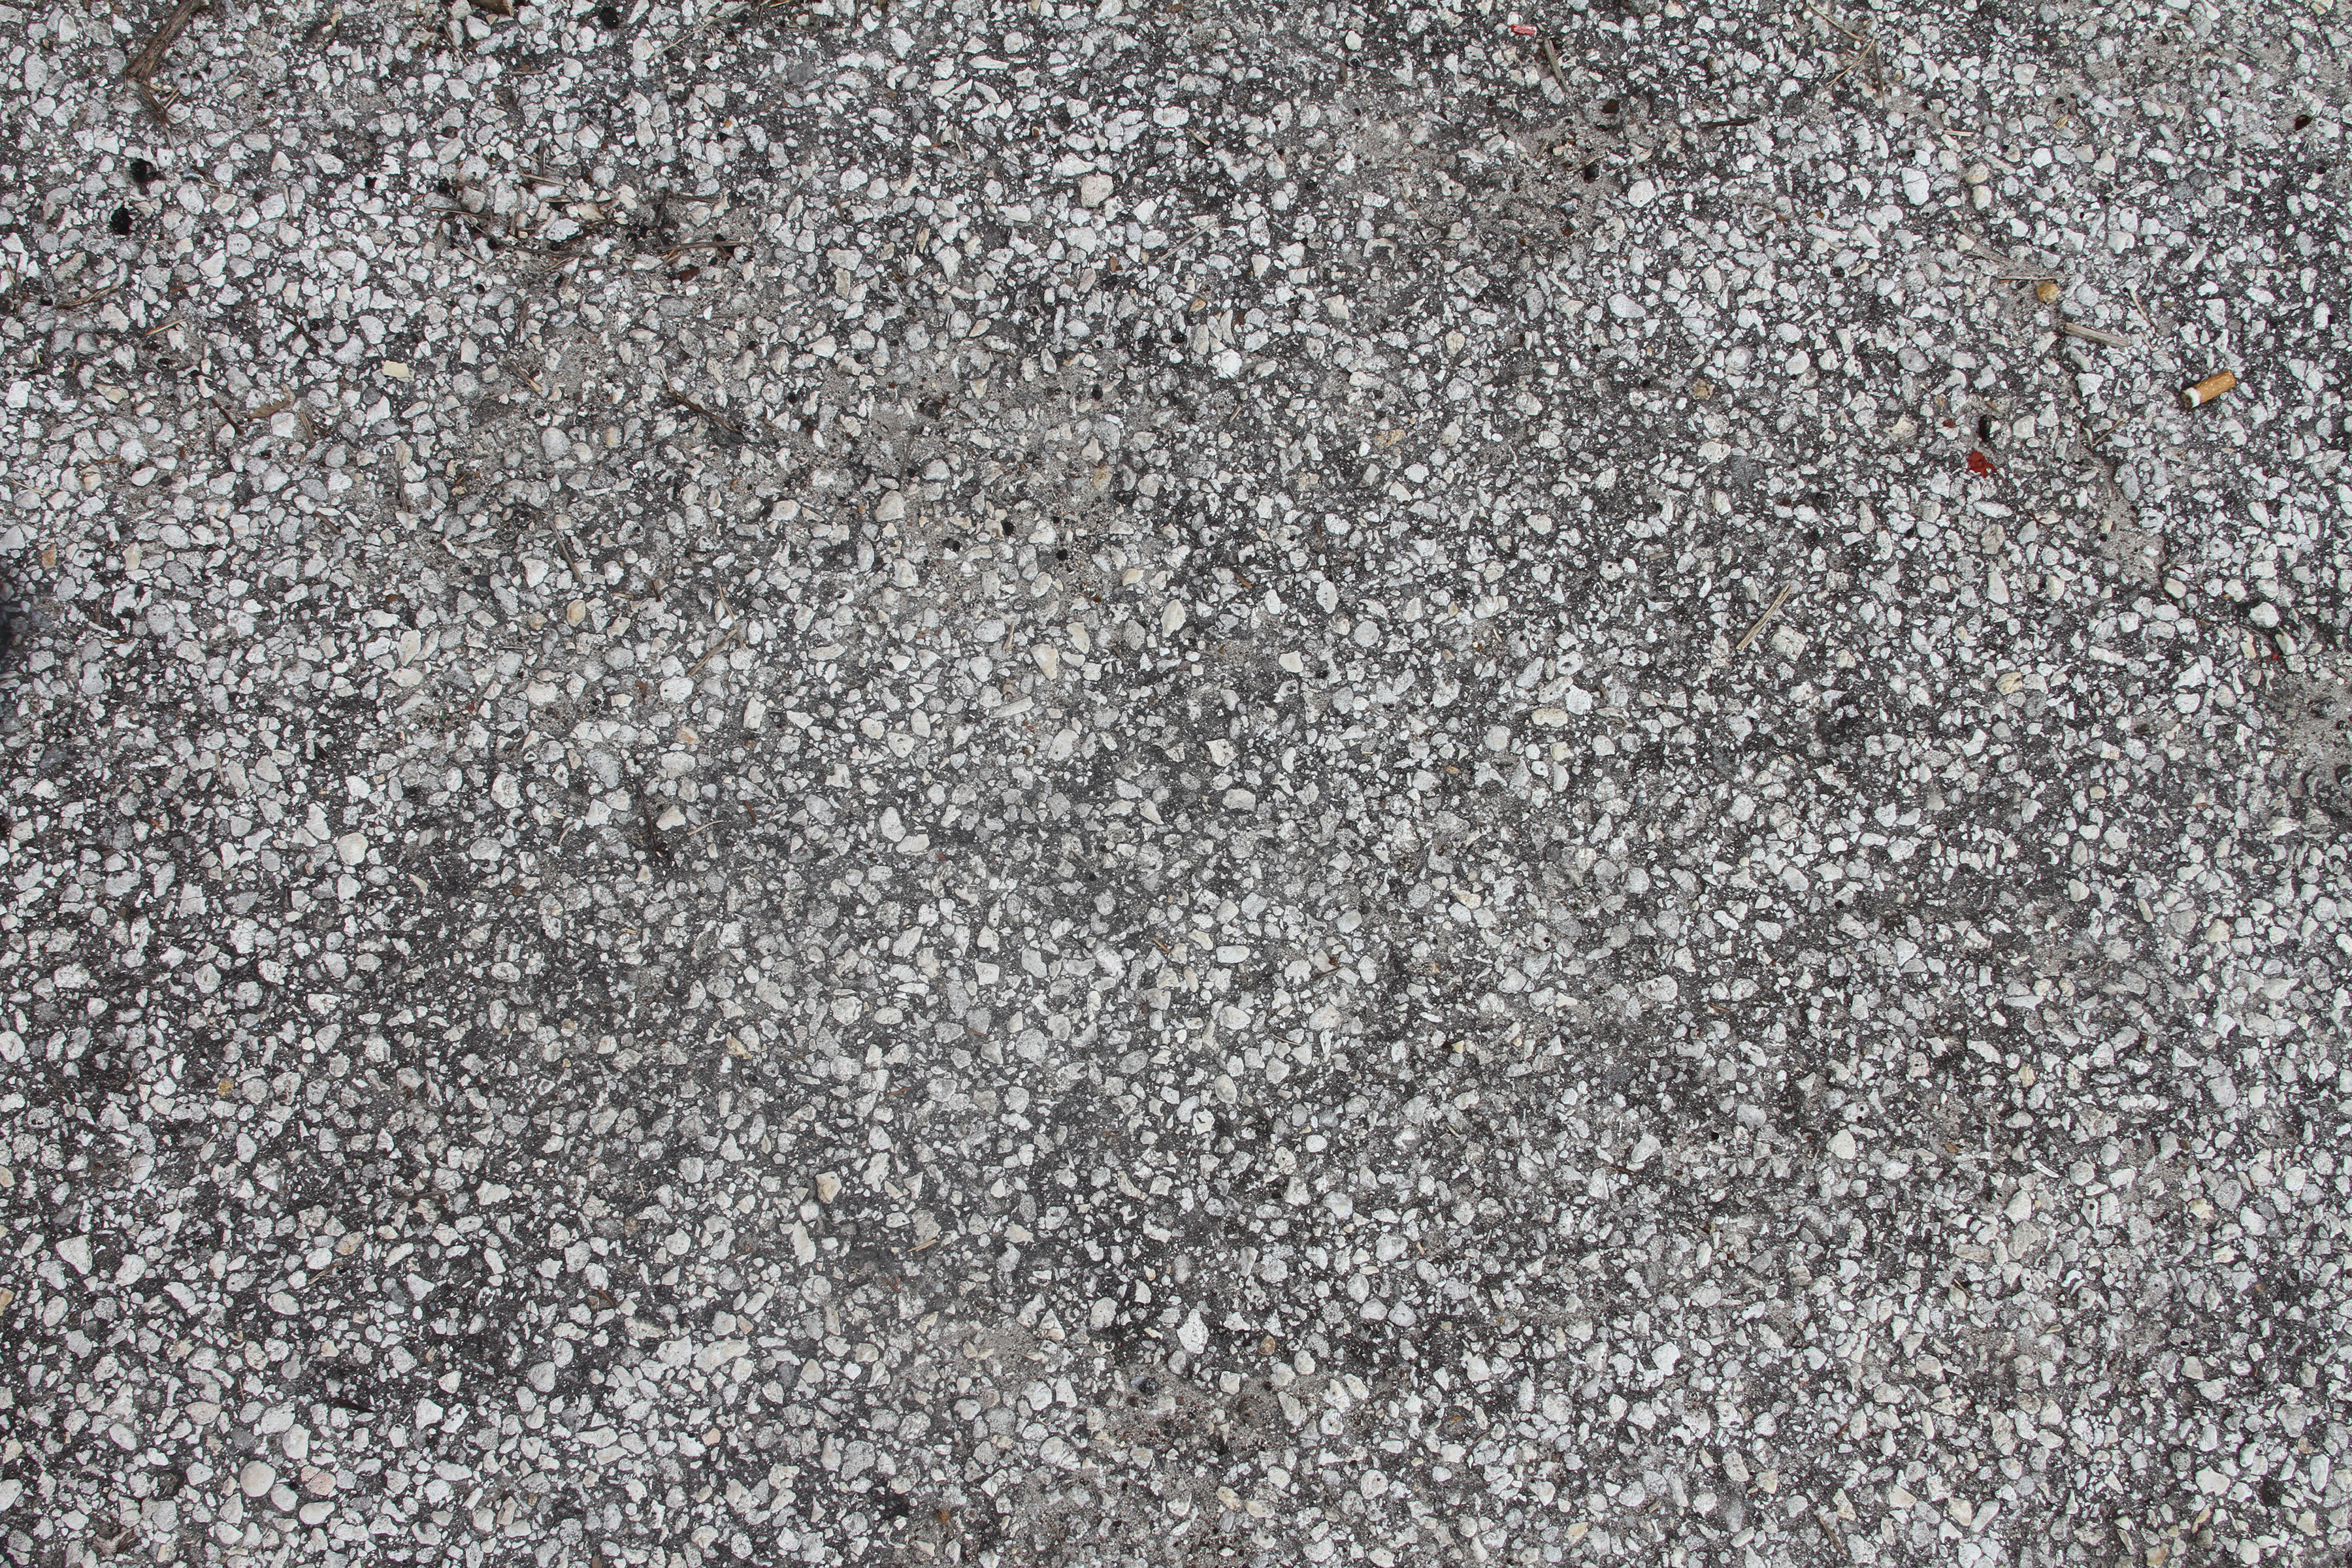 White Pebbles Ground Texture - 14Textures